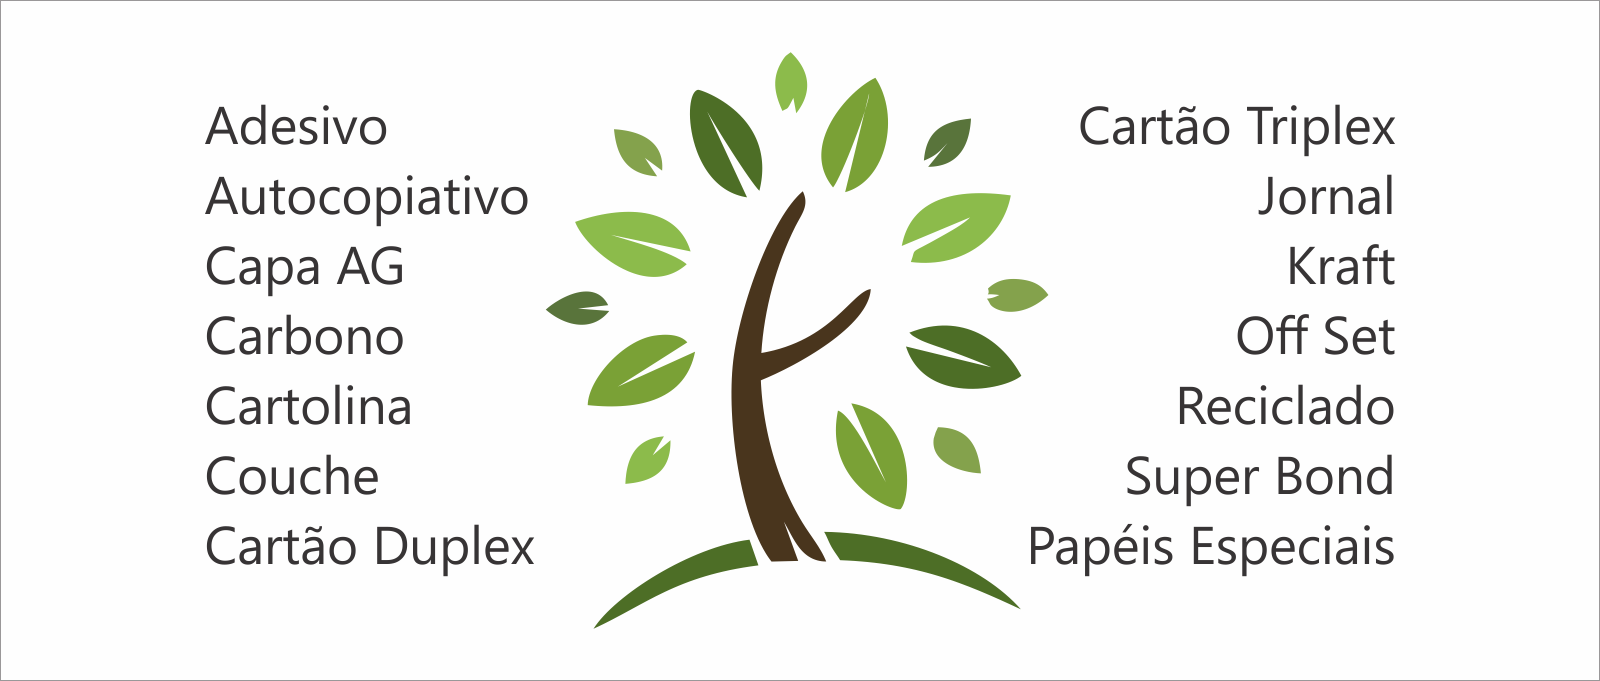 Imagem com o logo da Nova Futuro Papéis e os principais papéis comercializados